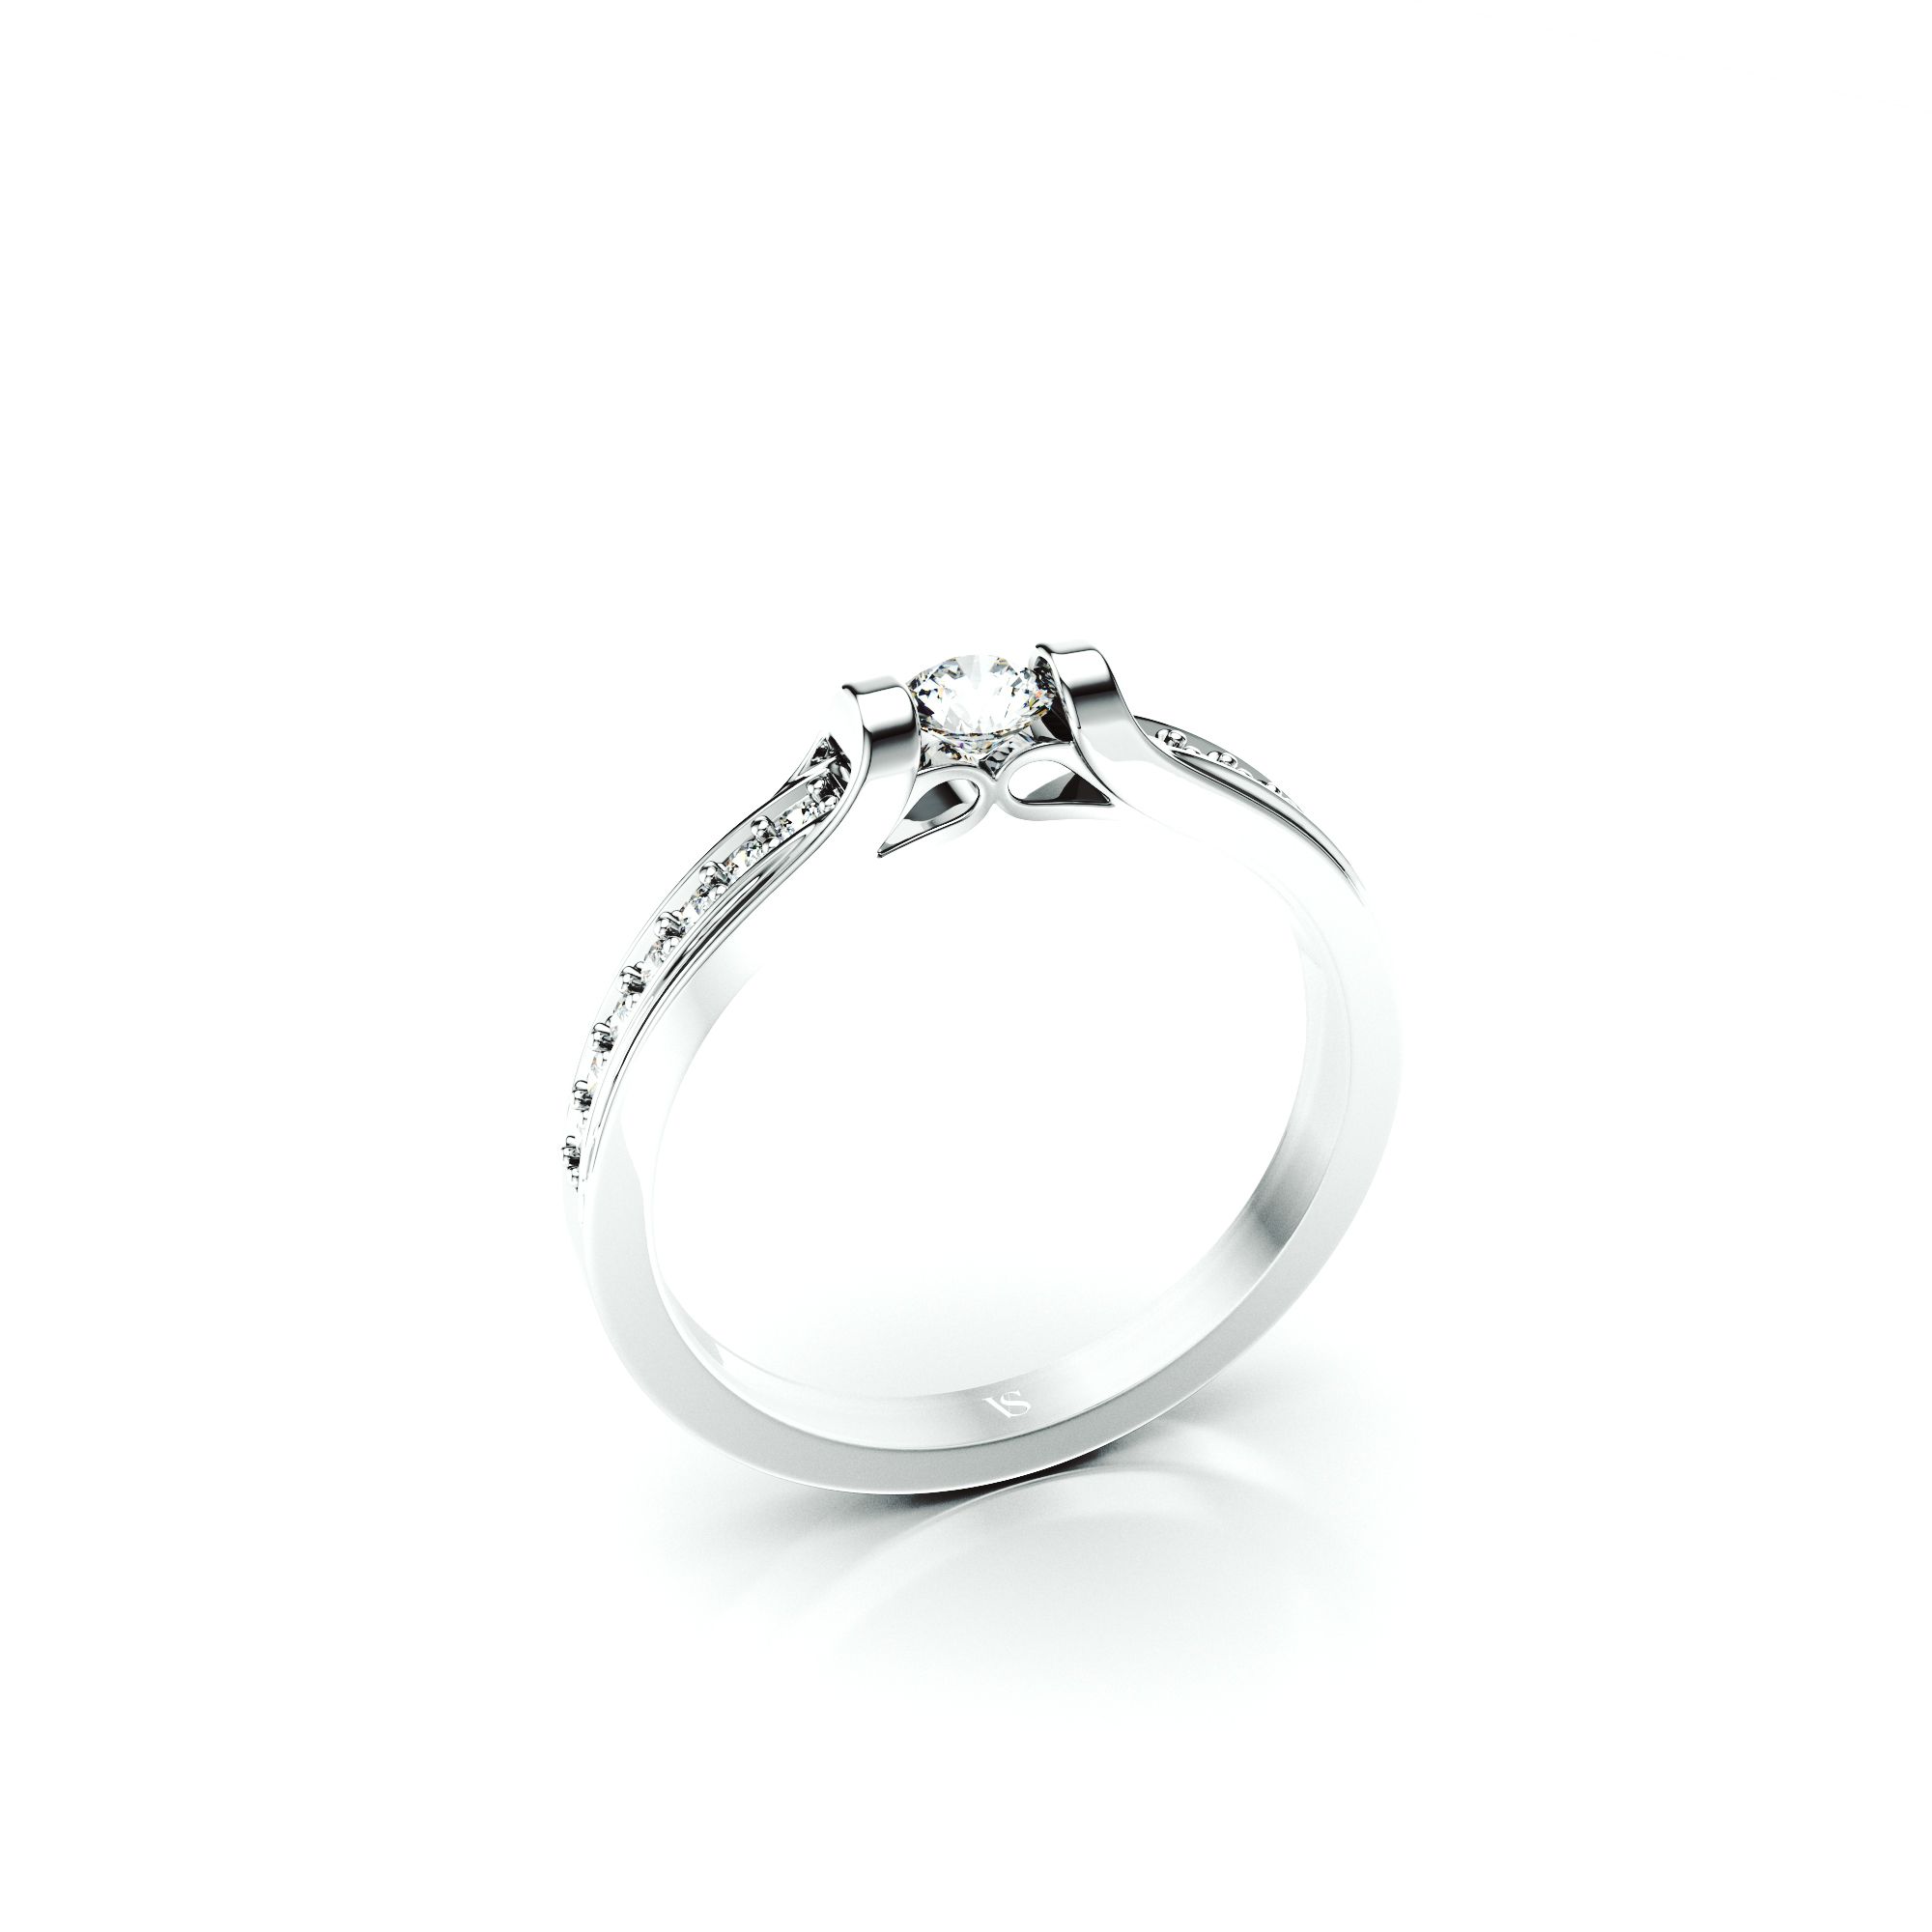 Zásnubní prsten VS065 – bílé zlato